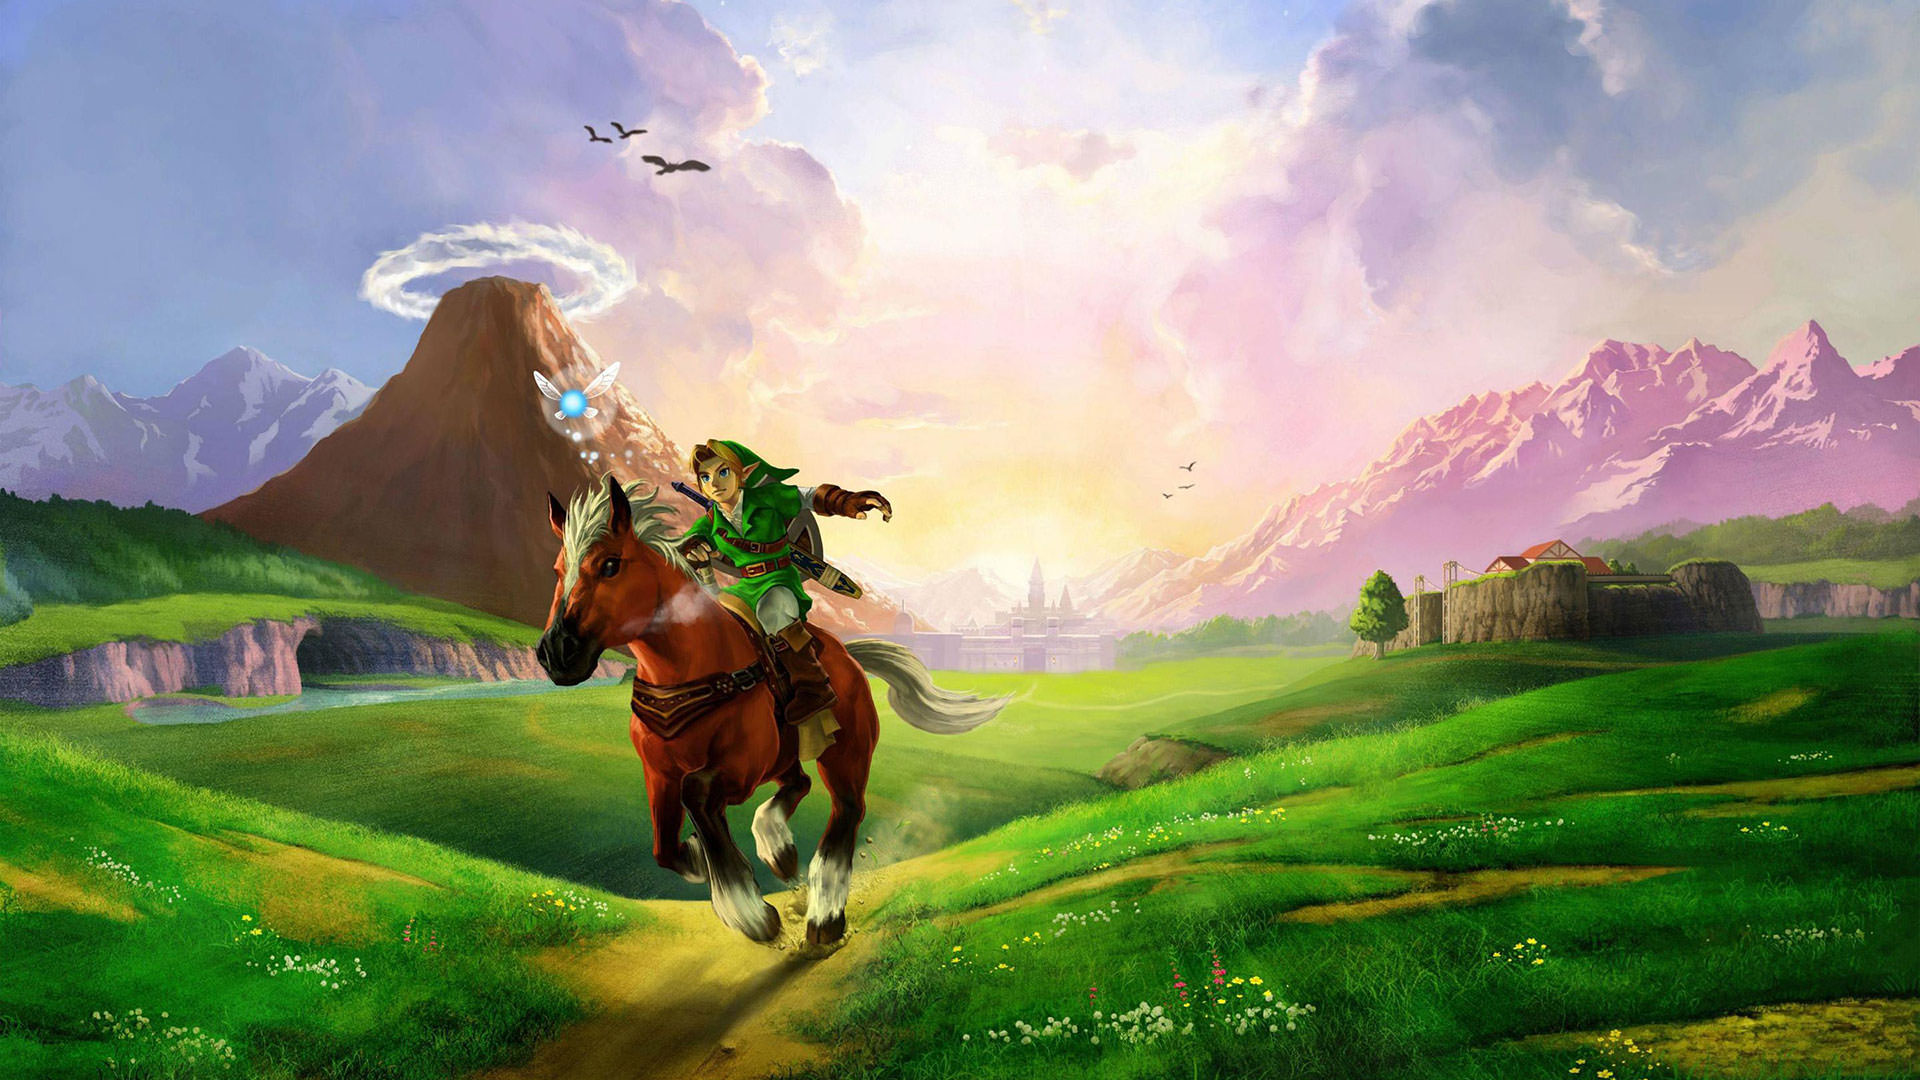 انتشار پورت غیر رسمی بازی The Legend of Zelda: Ocarina of Time برای کامپیوتر